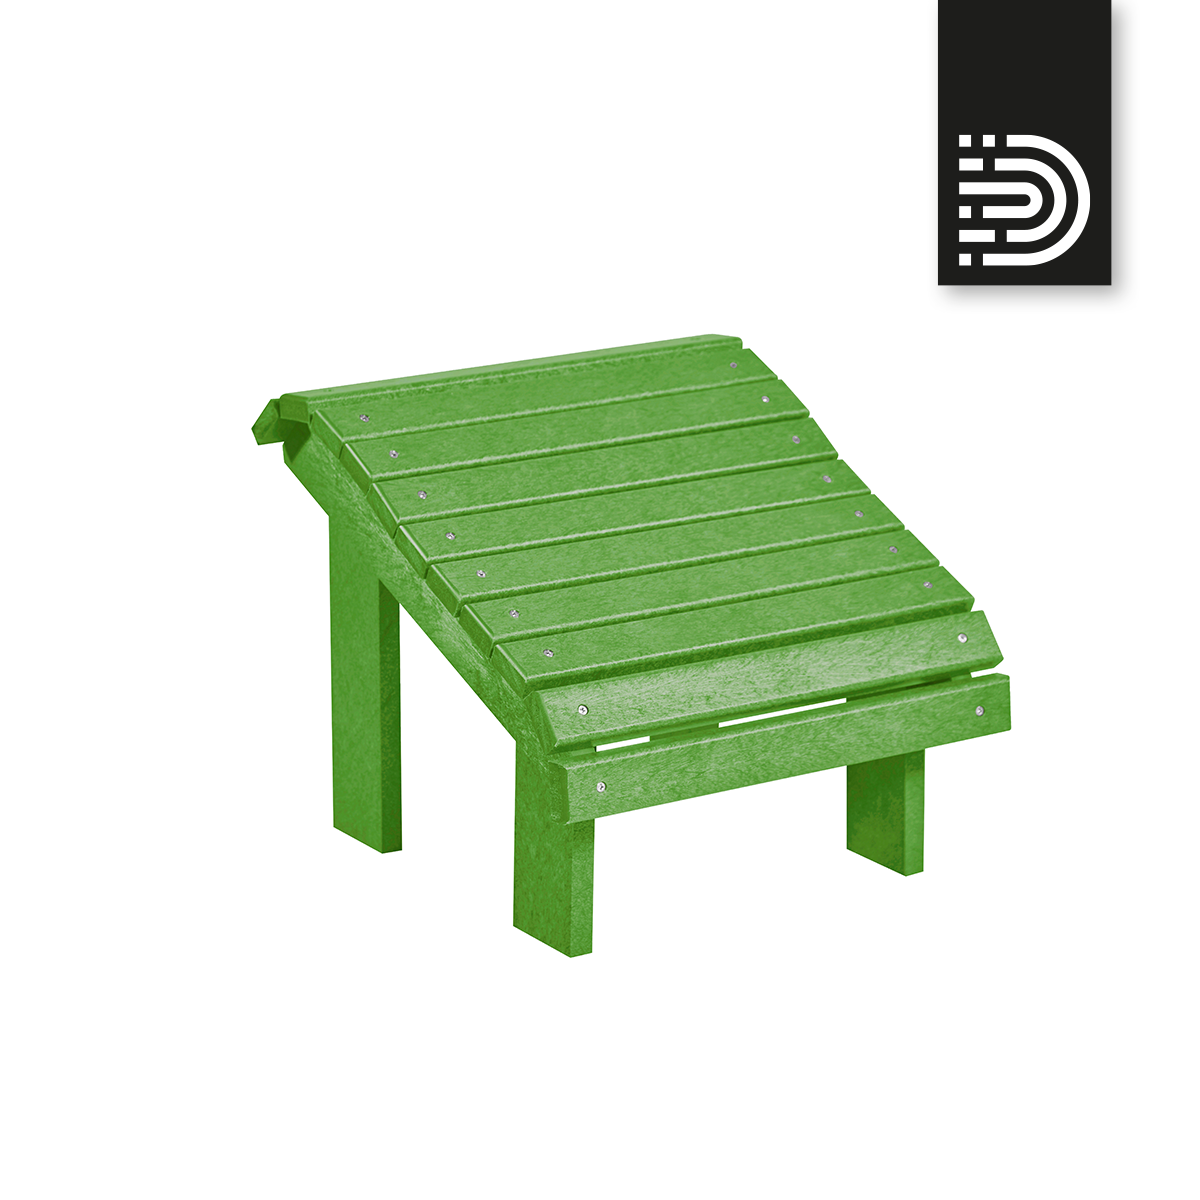 F04 Premium Footstool - Kiwi green 17